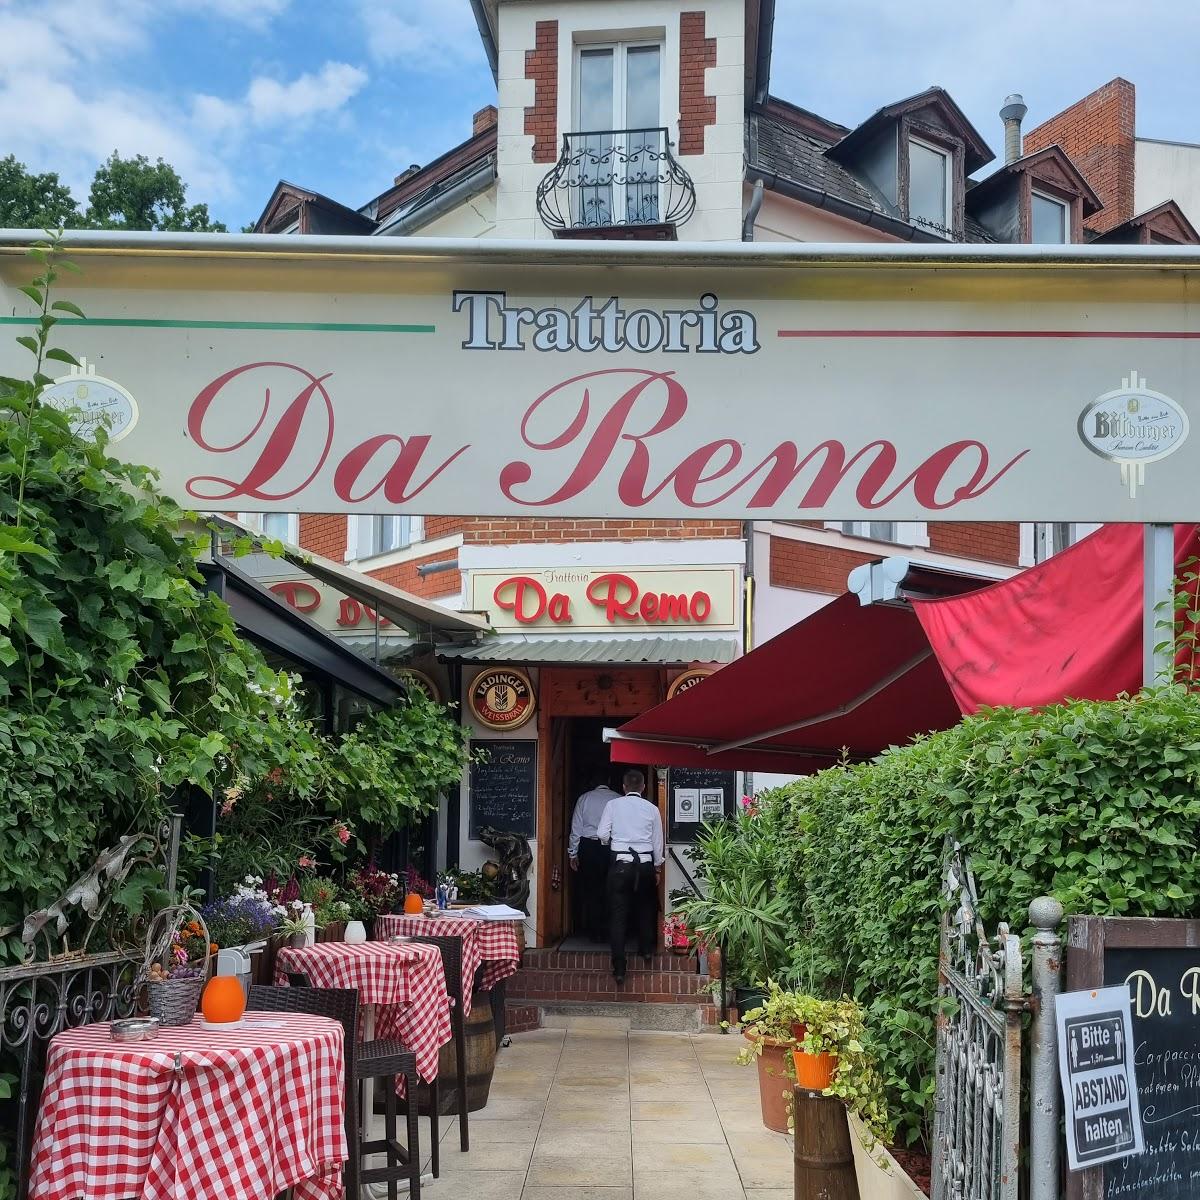 Restaurant "Trattoria Da Remo" in  Berlin